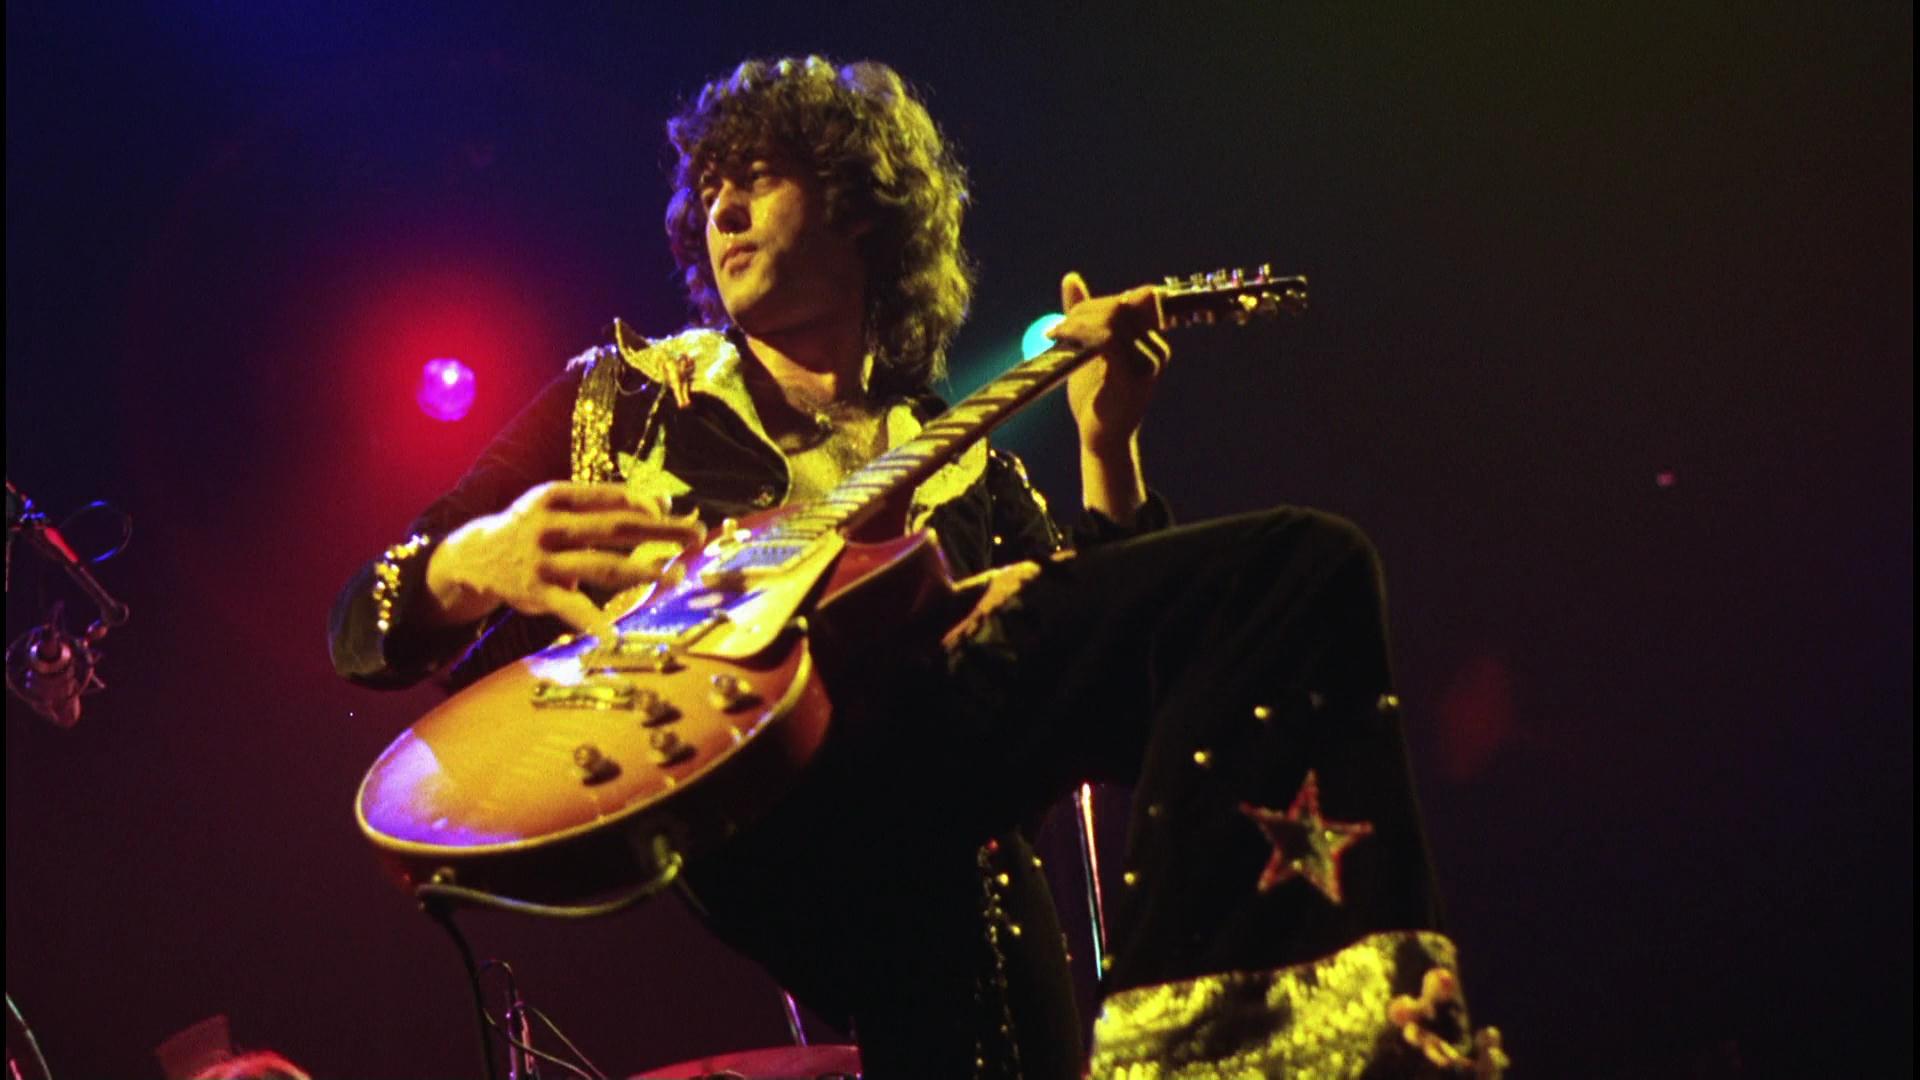 Jimmy Page Led Zeppelin live